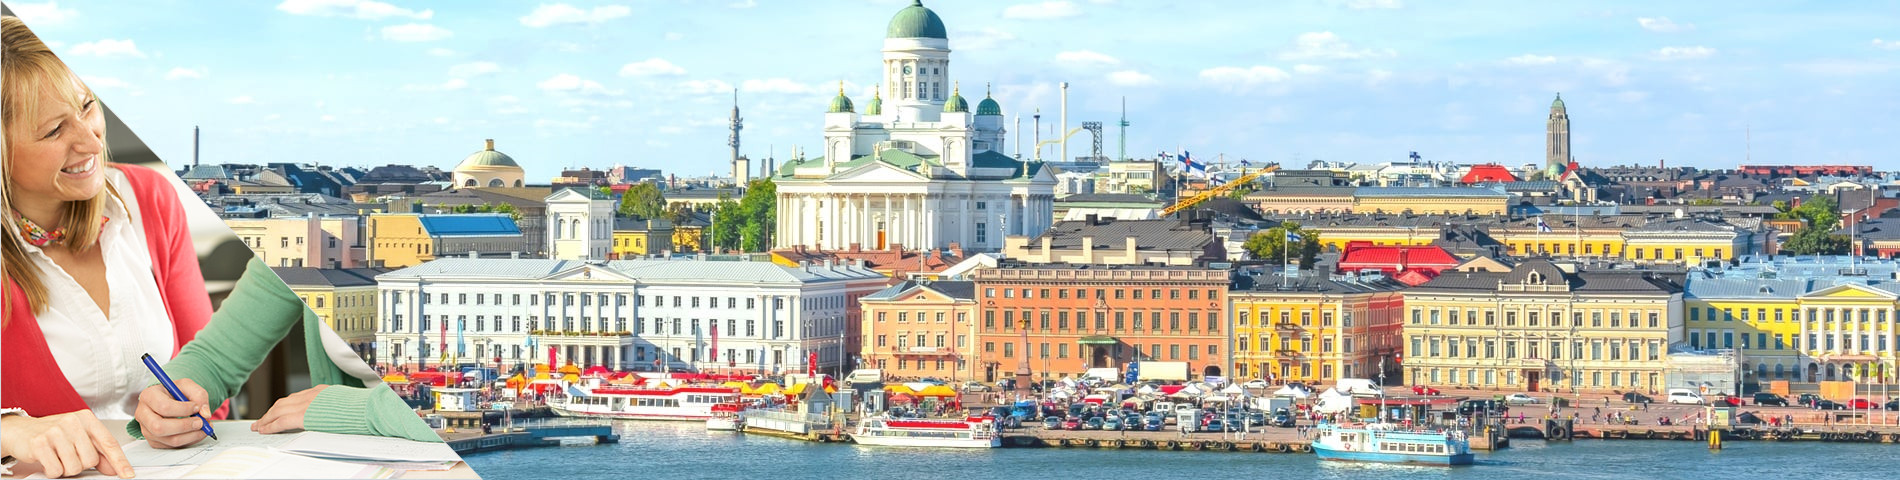 Helsinki - Študujte a bývajte v dome učiteľa